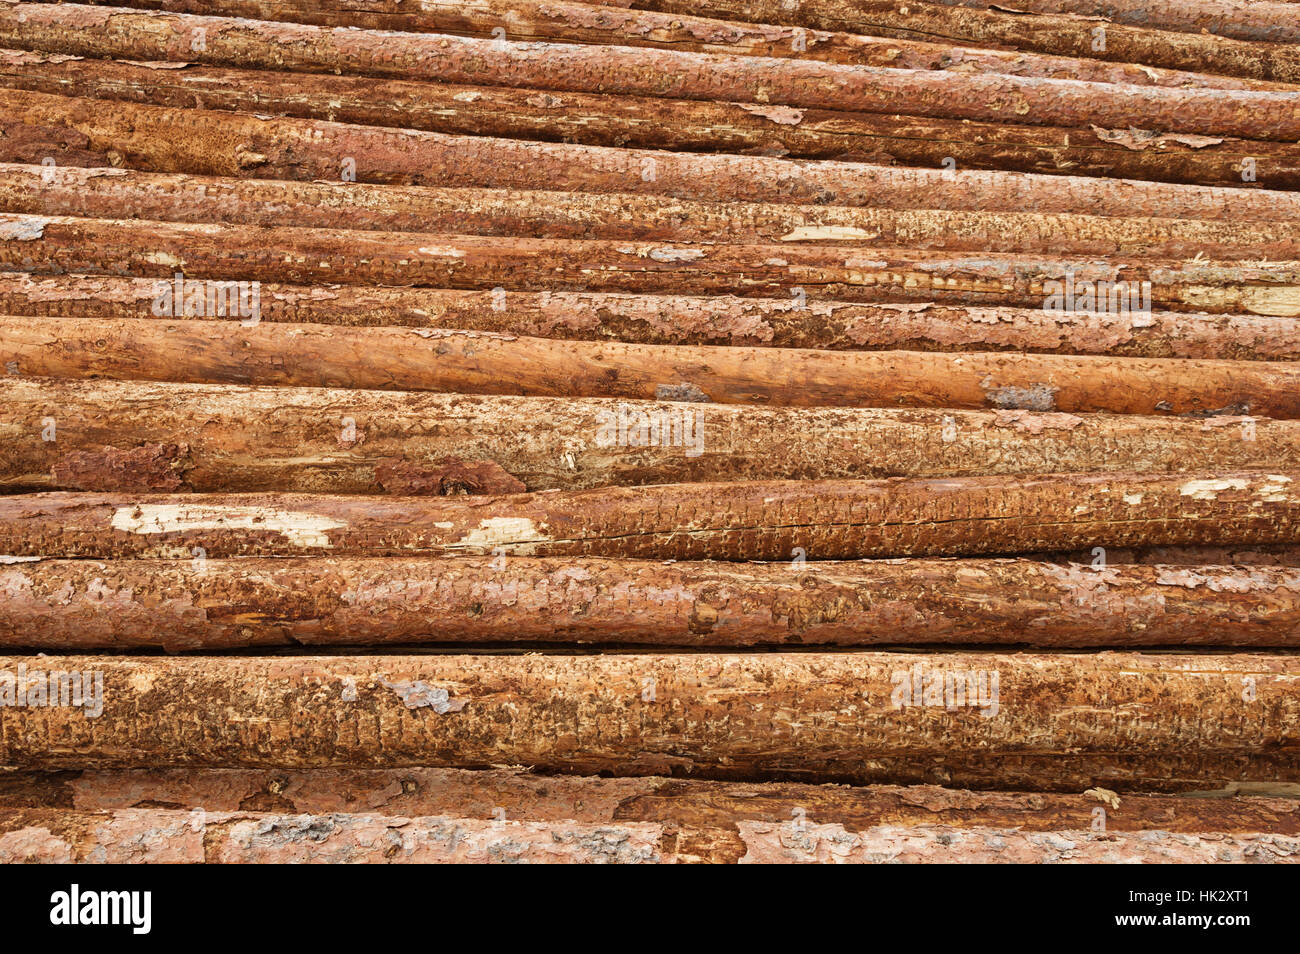 Un montón de tronco de árbol registros como parte de una operación de madera Foto de stock